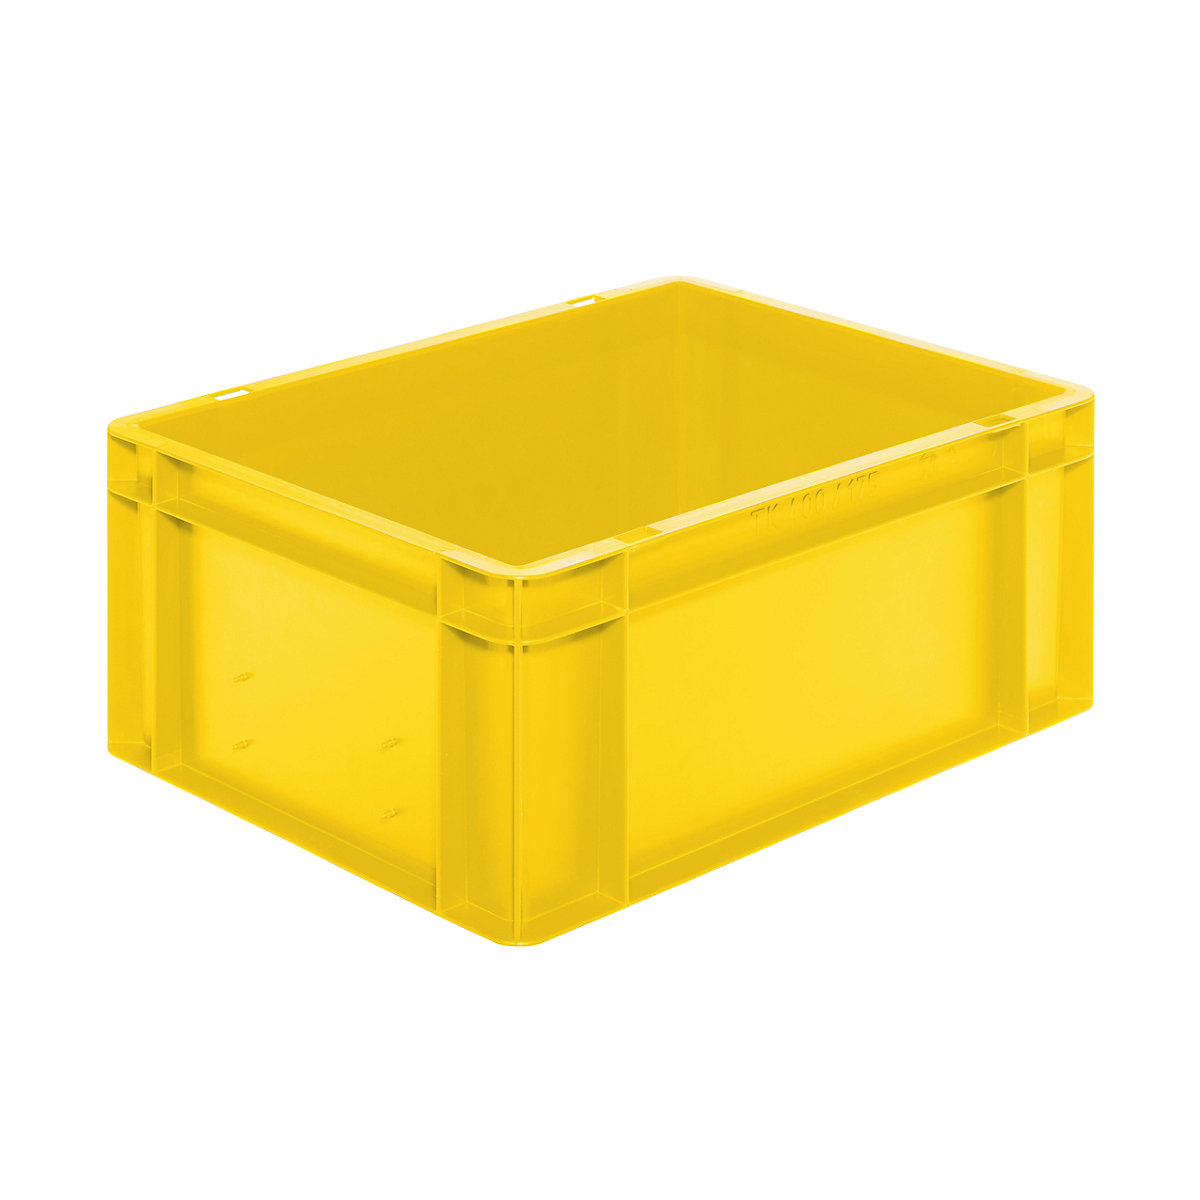 Euro-Format-Stapelbehälter, Wände und Boden geschlossen, LxBxH 400 x 300 x 175 mm, gelb, VE 5 Stk